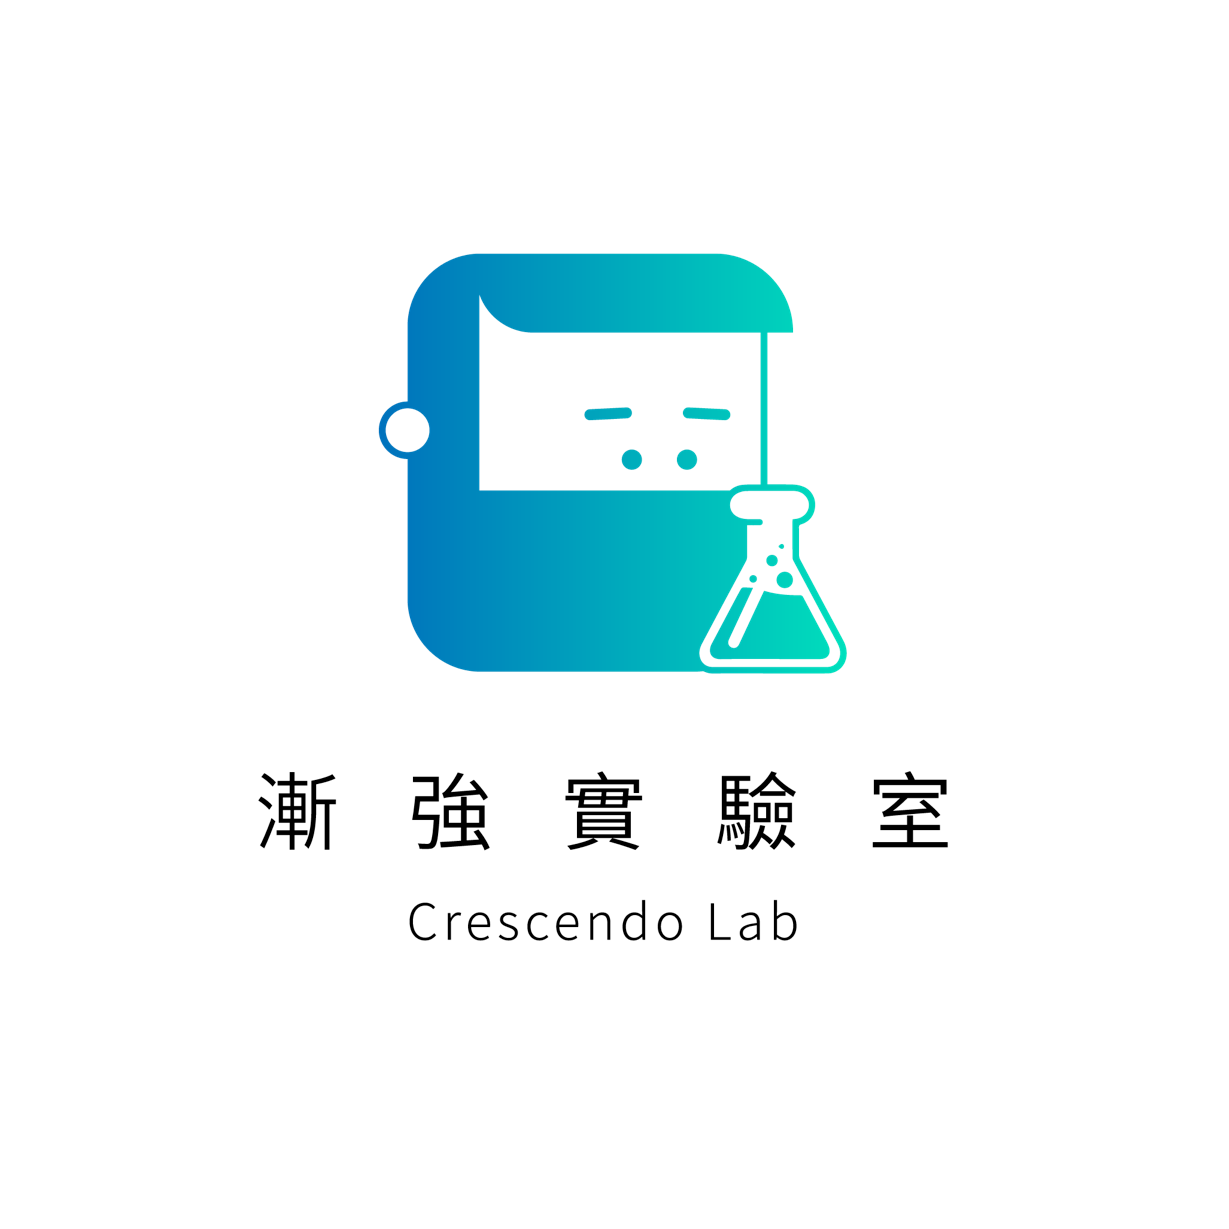 漸強實驗室 Crescendo Lab_BotManager _logo - Shina Yang